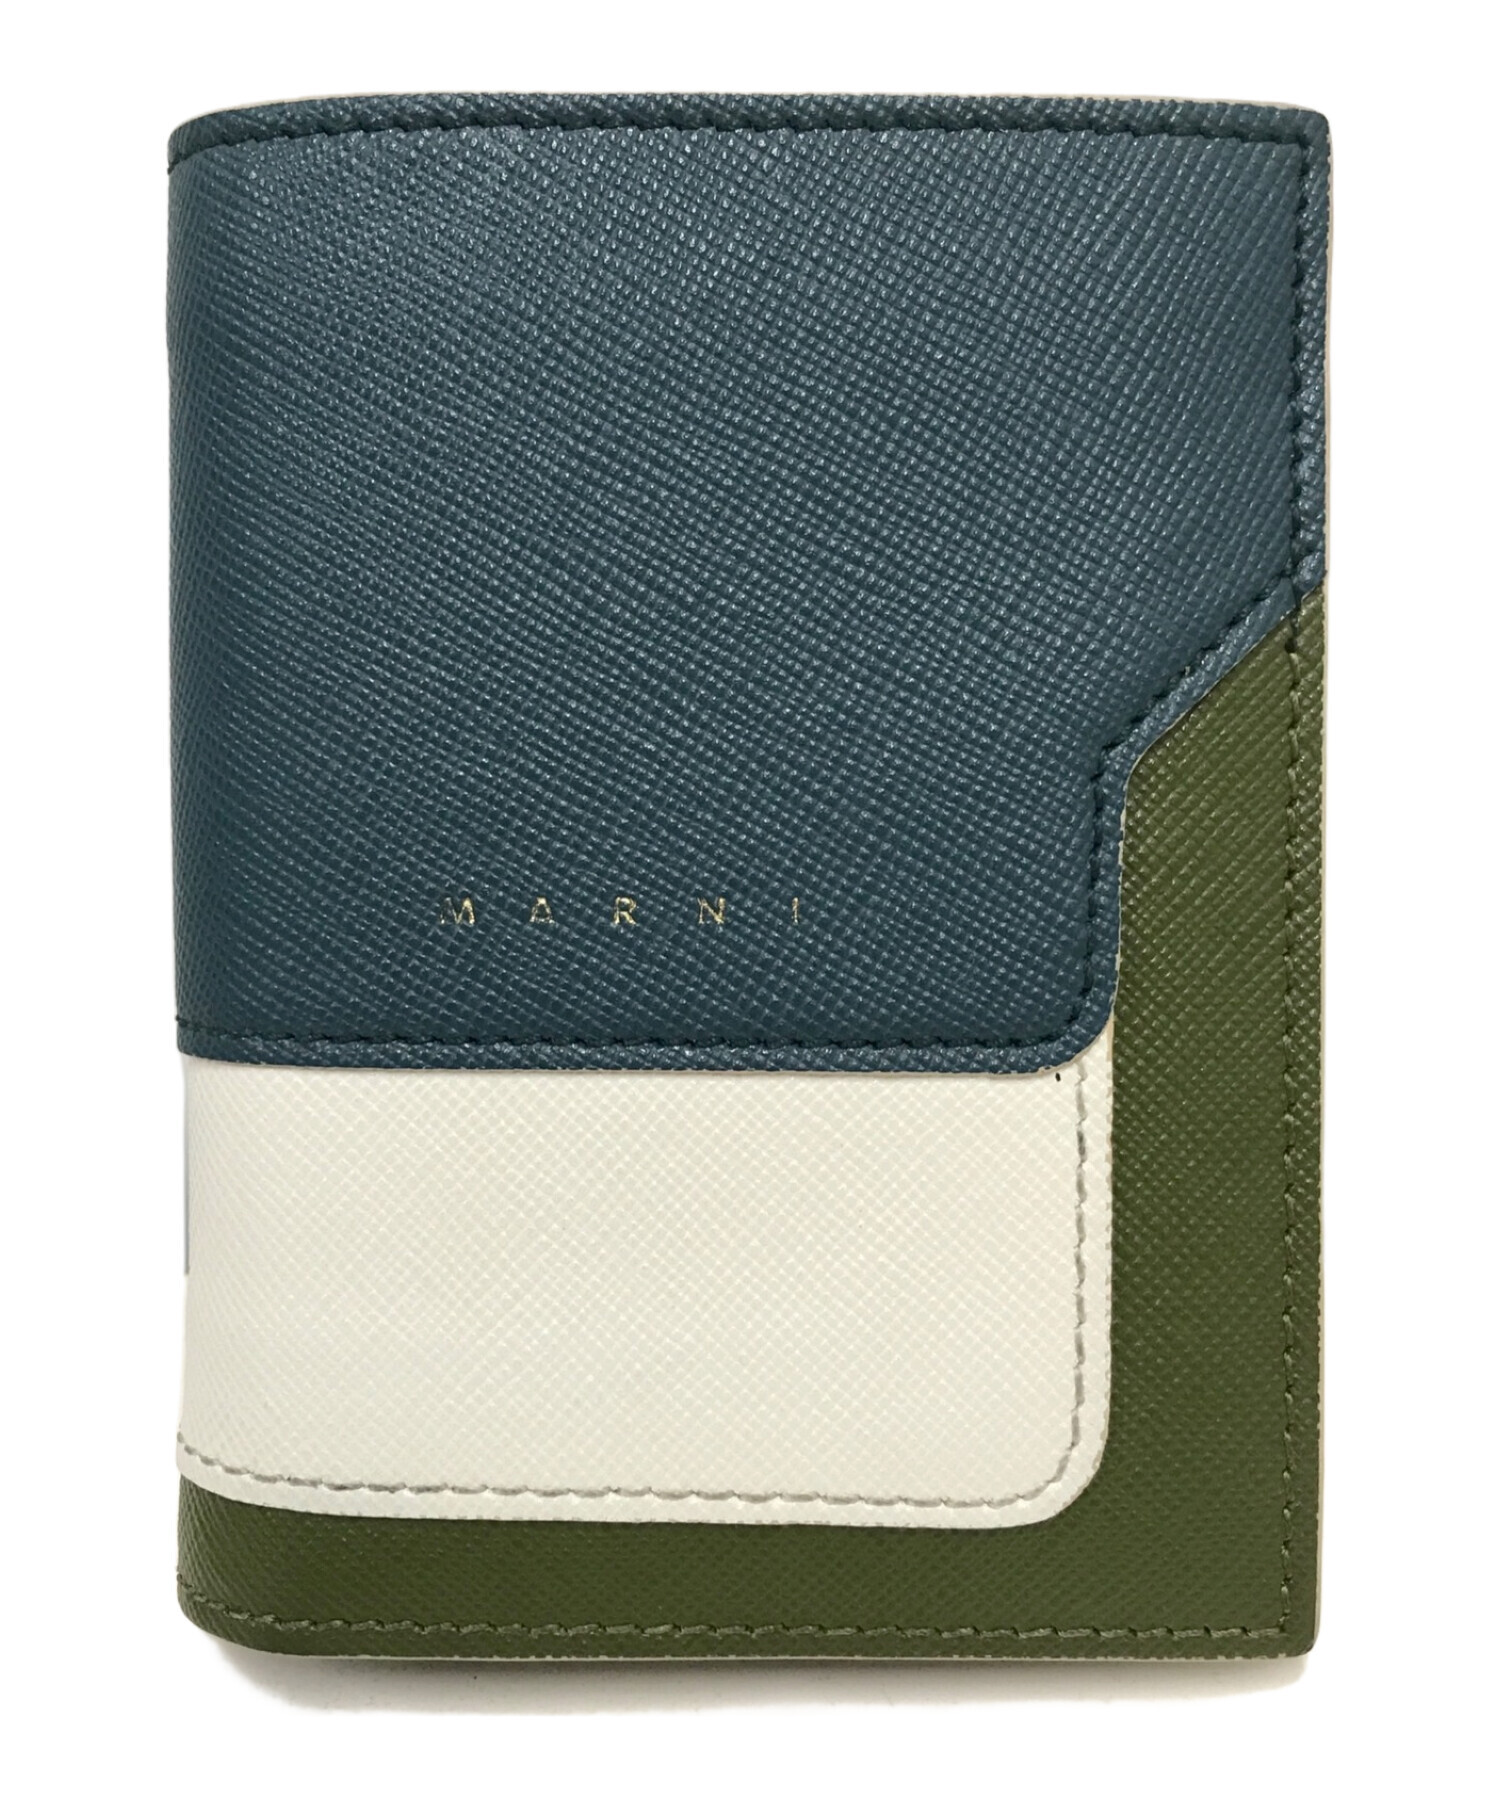 MARNI (マルニ) 二つ折り ミニ財布 サフィアーノレザー ブルー×グリーン